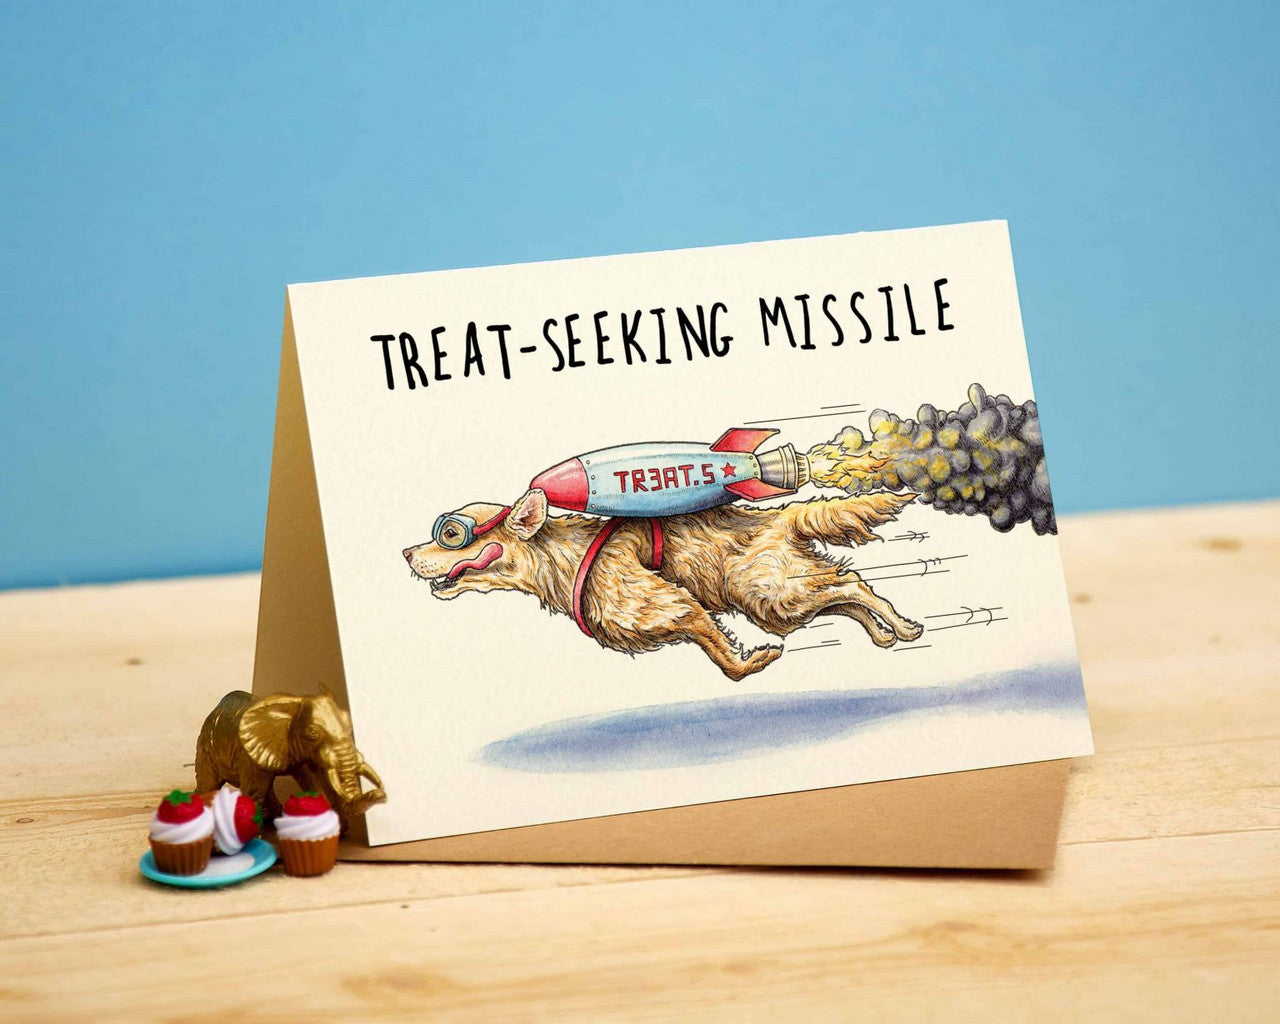 Treat-Seeking Missile Greetings Card by Bewilderbeest.